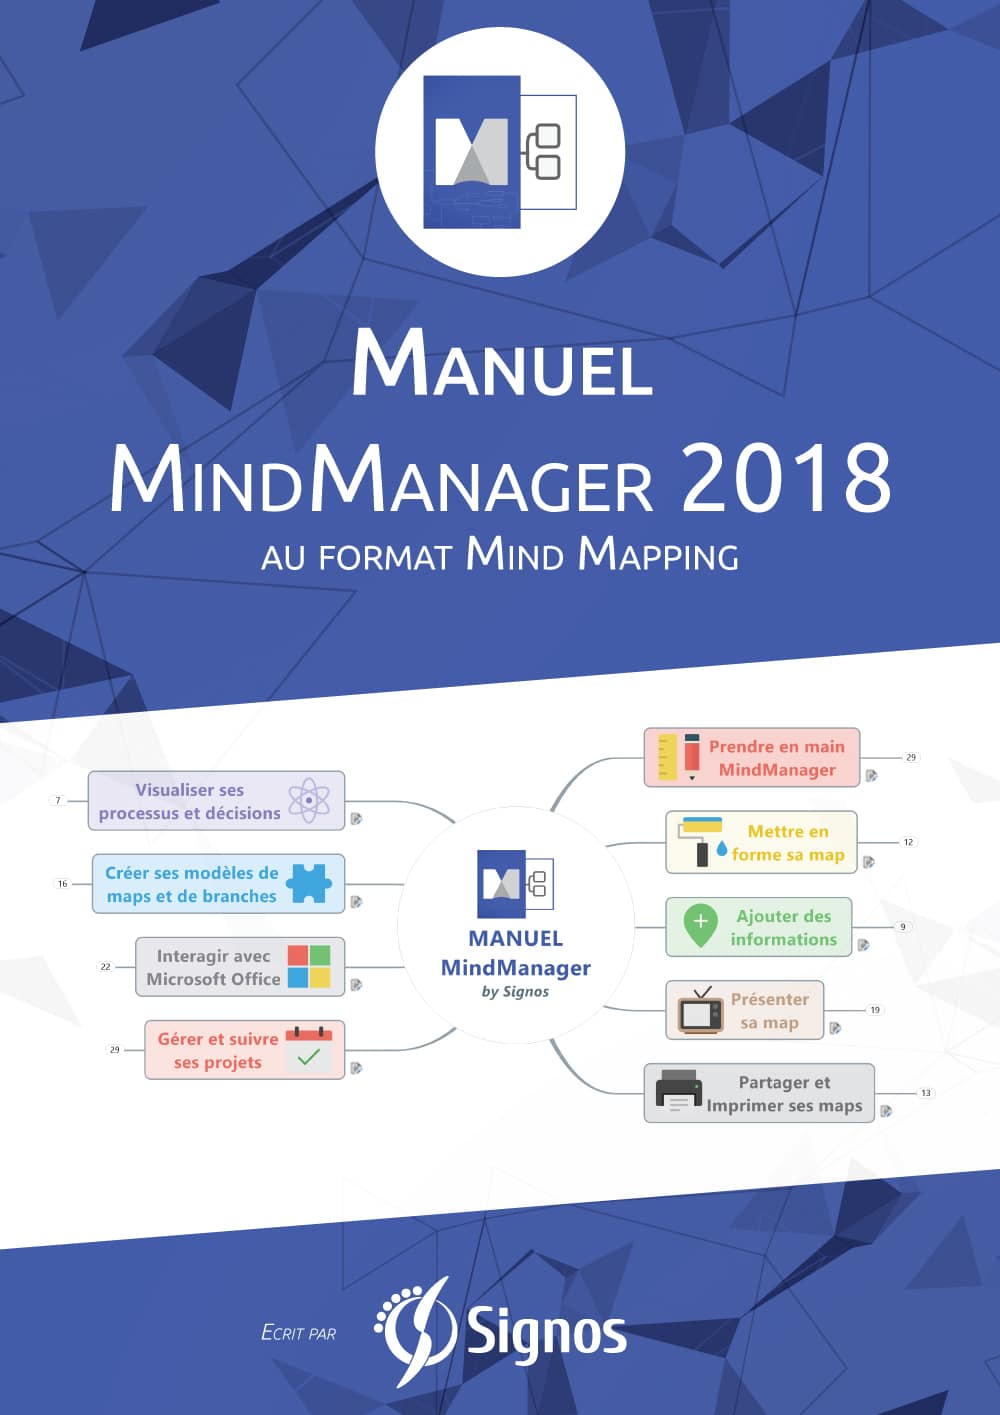 Manuel MindManager 2018